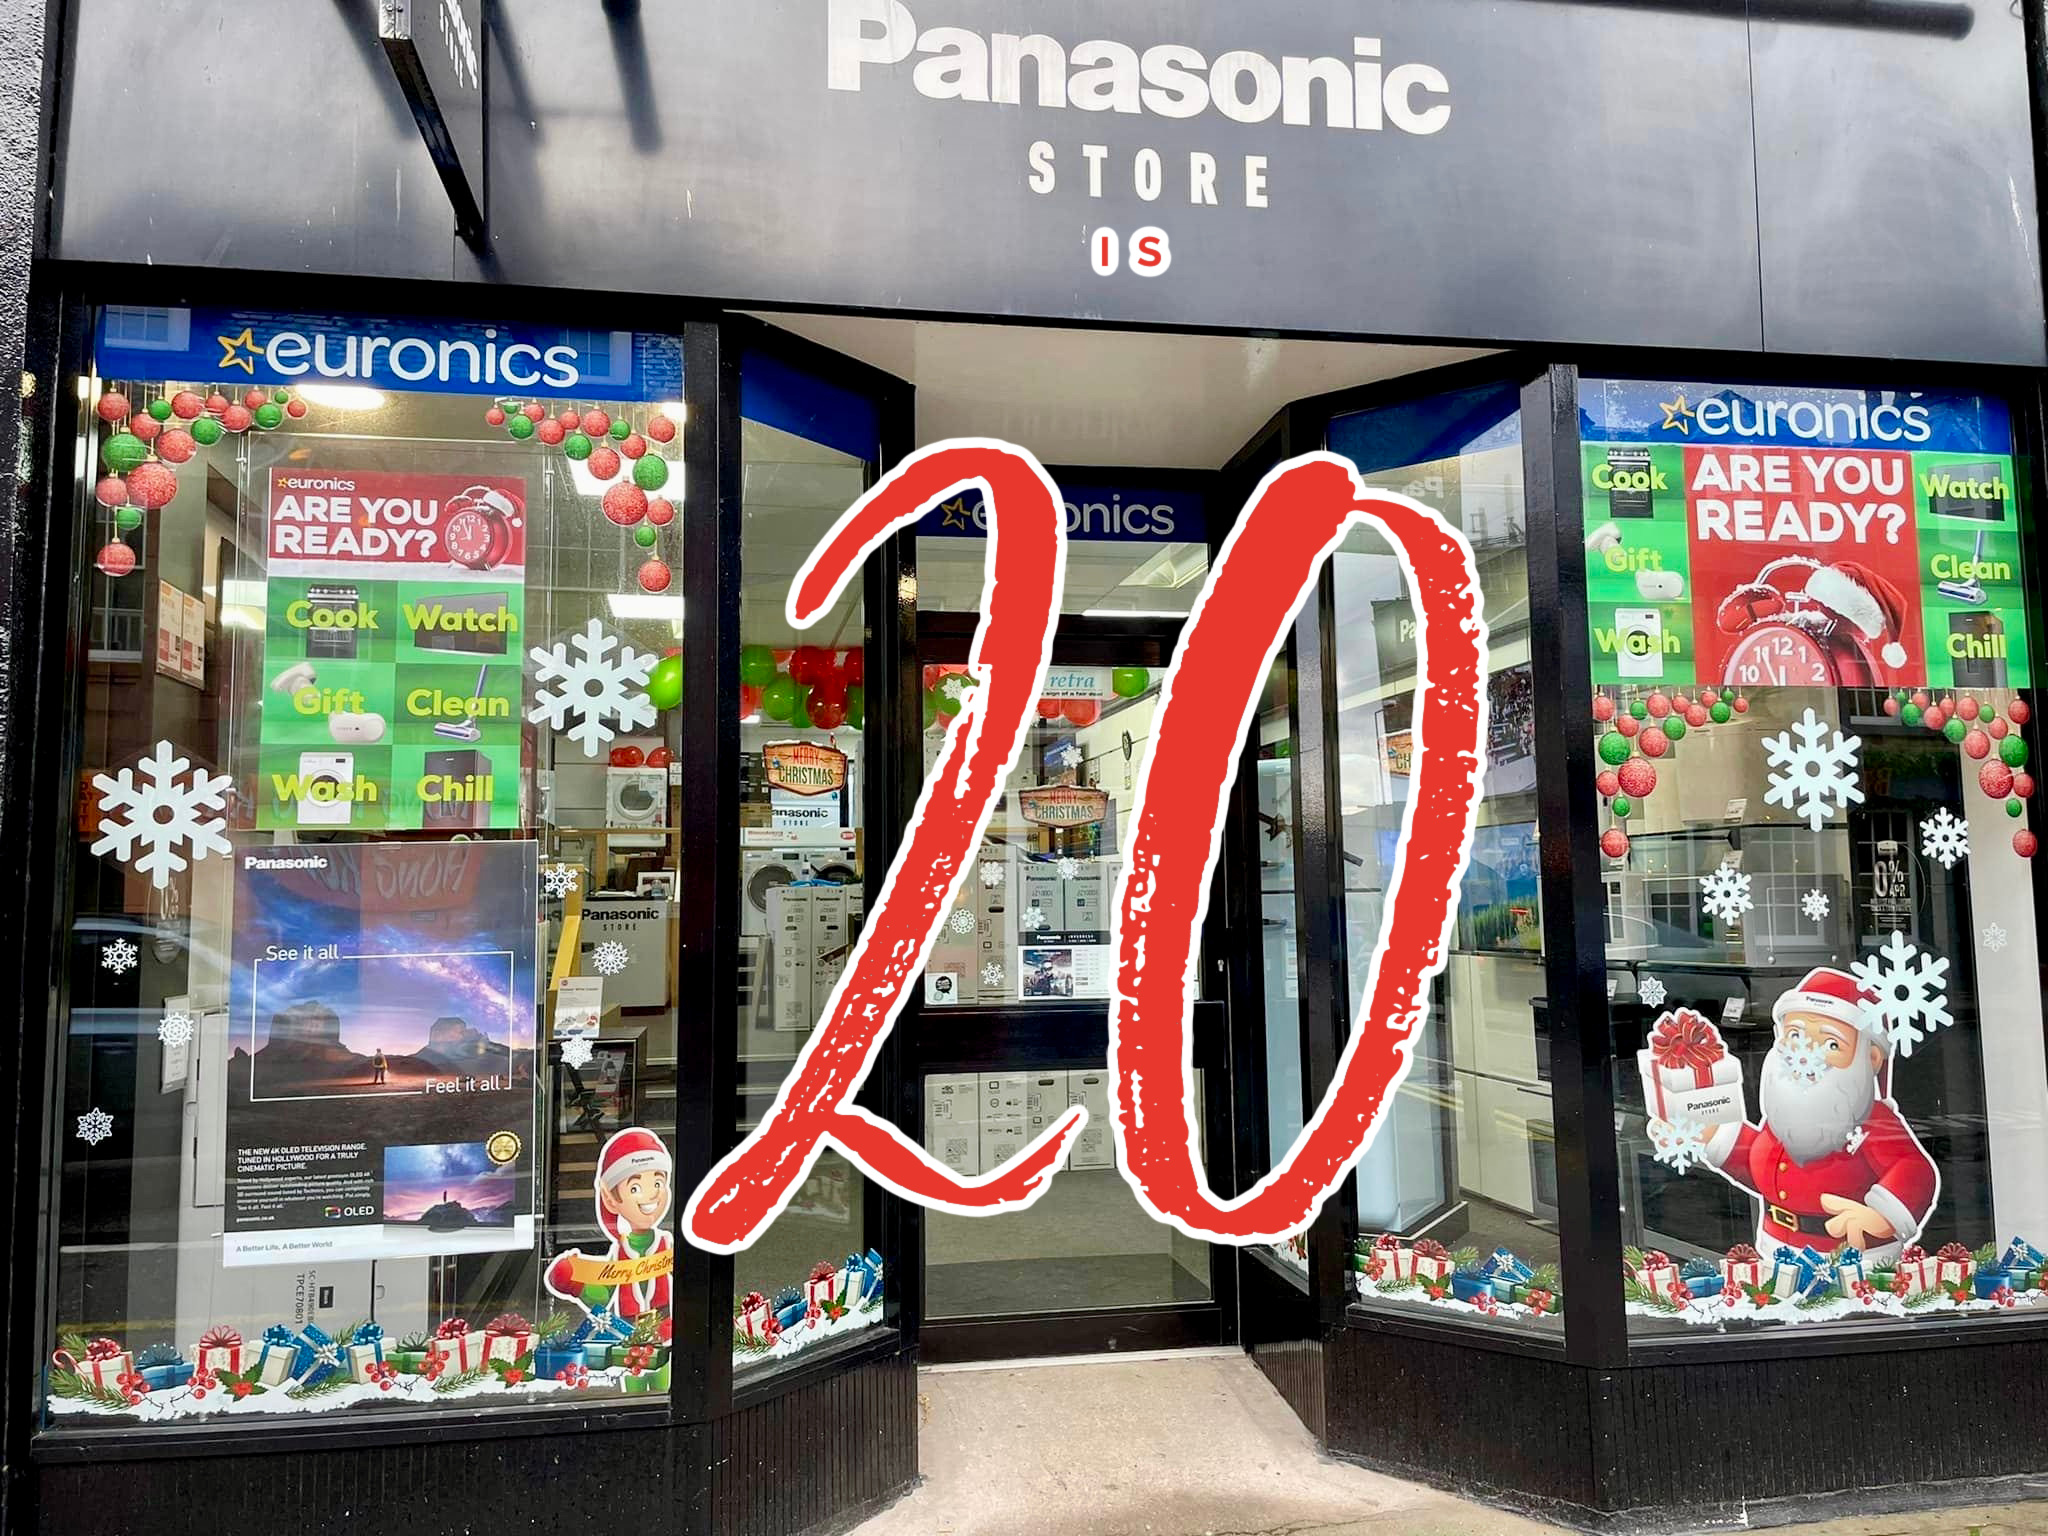 Panasonic Inverness Store turns 20!